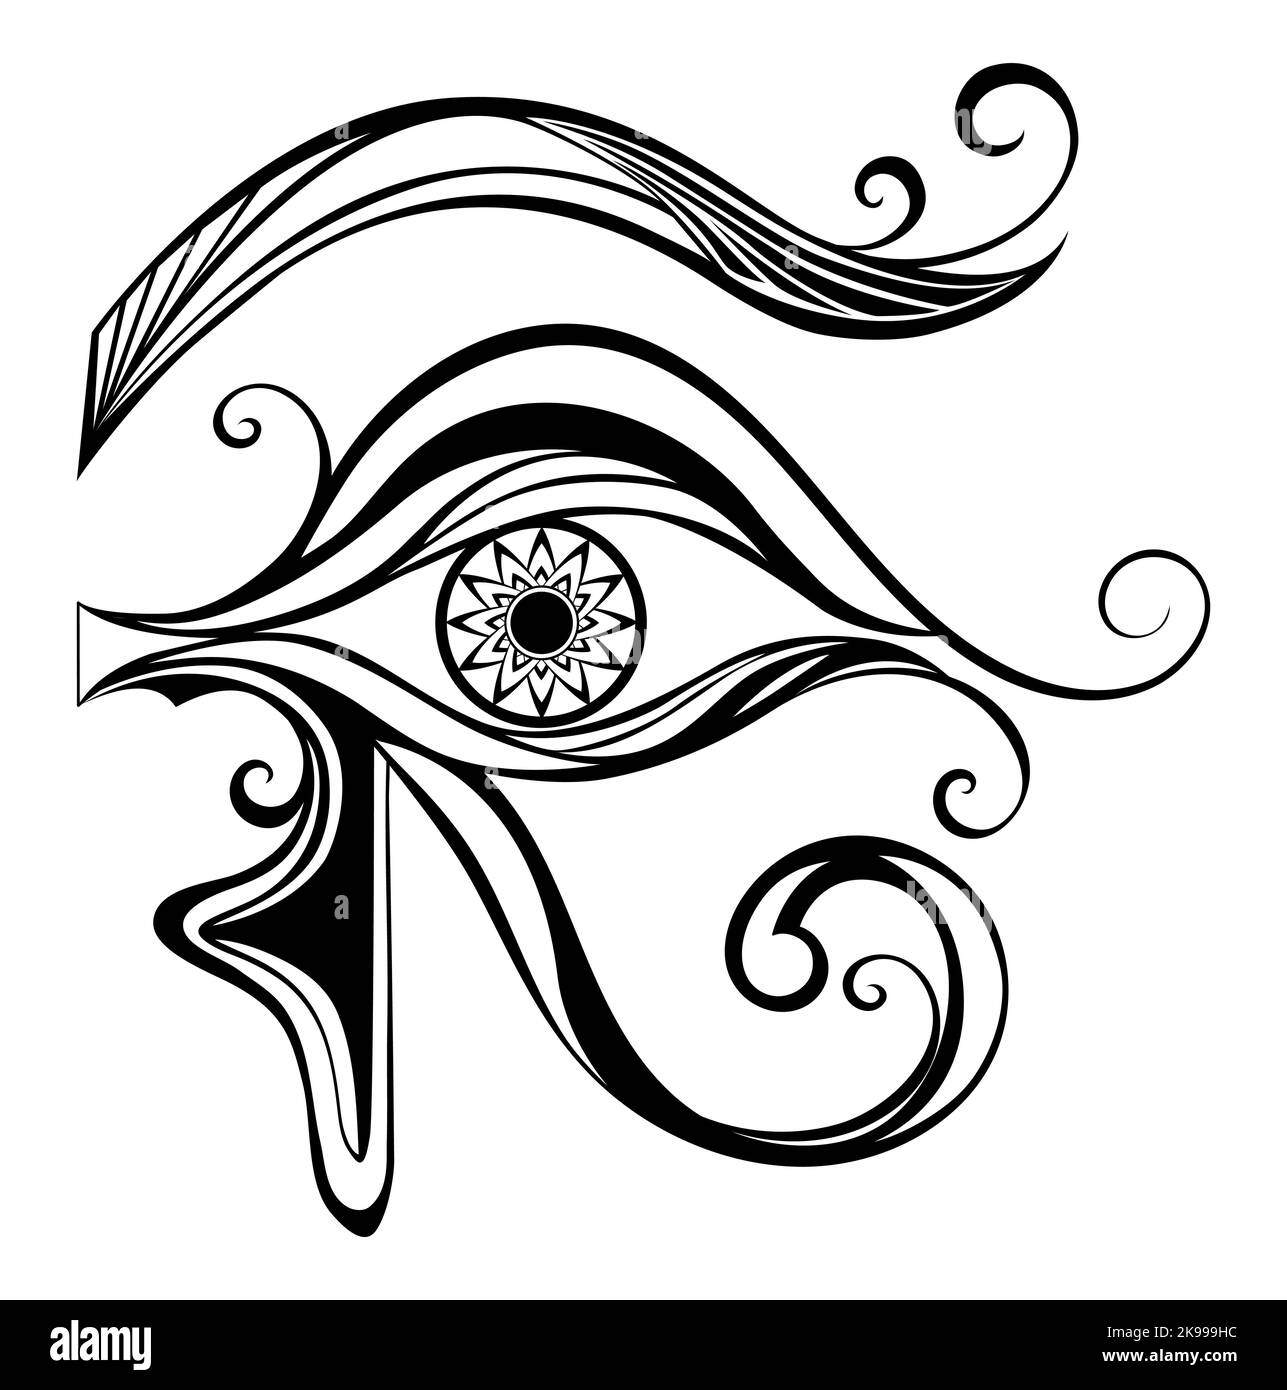 Noir, contour, symbole égyptien de l'œil d'Horus sur fond blanc. Symbole égyptien. Illustration de Vecteur